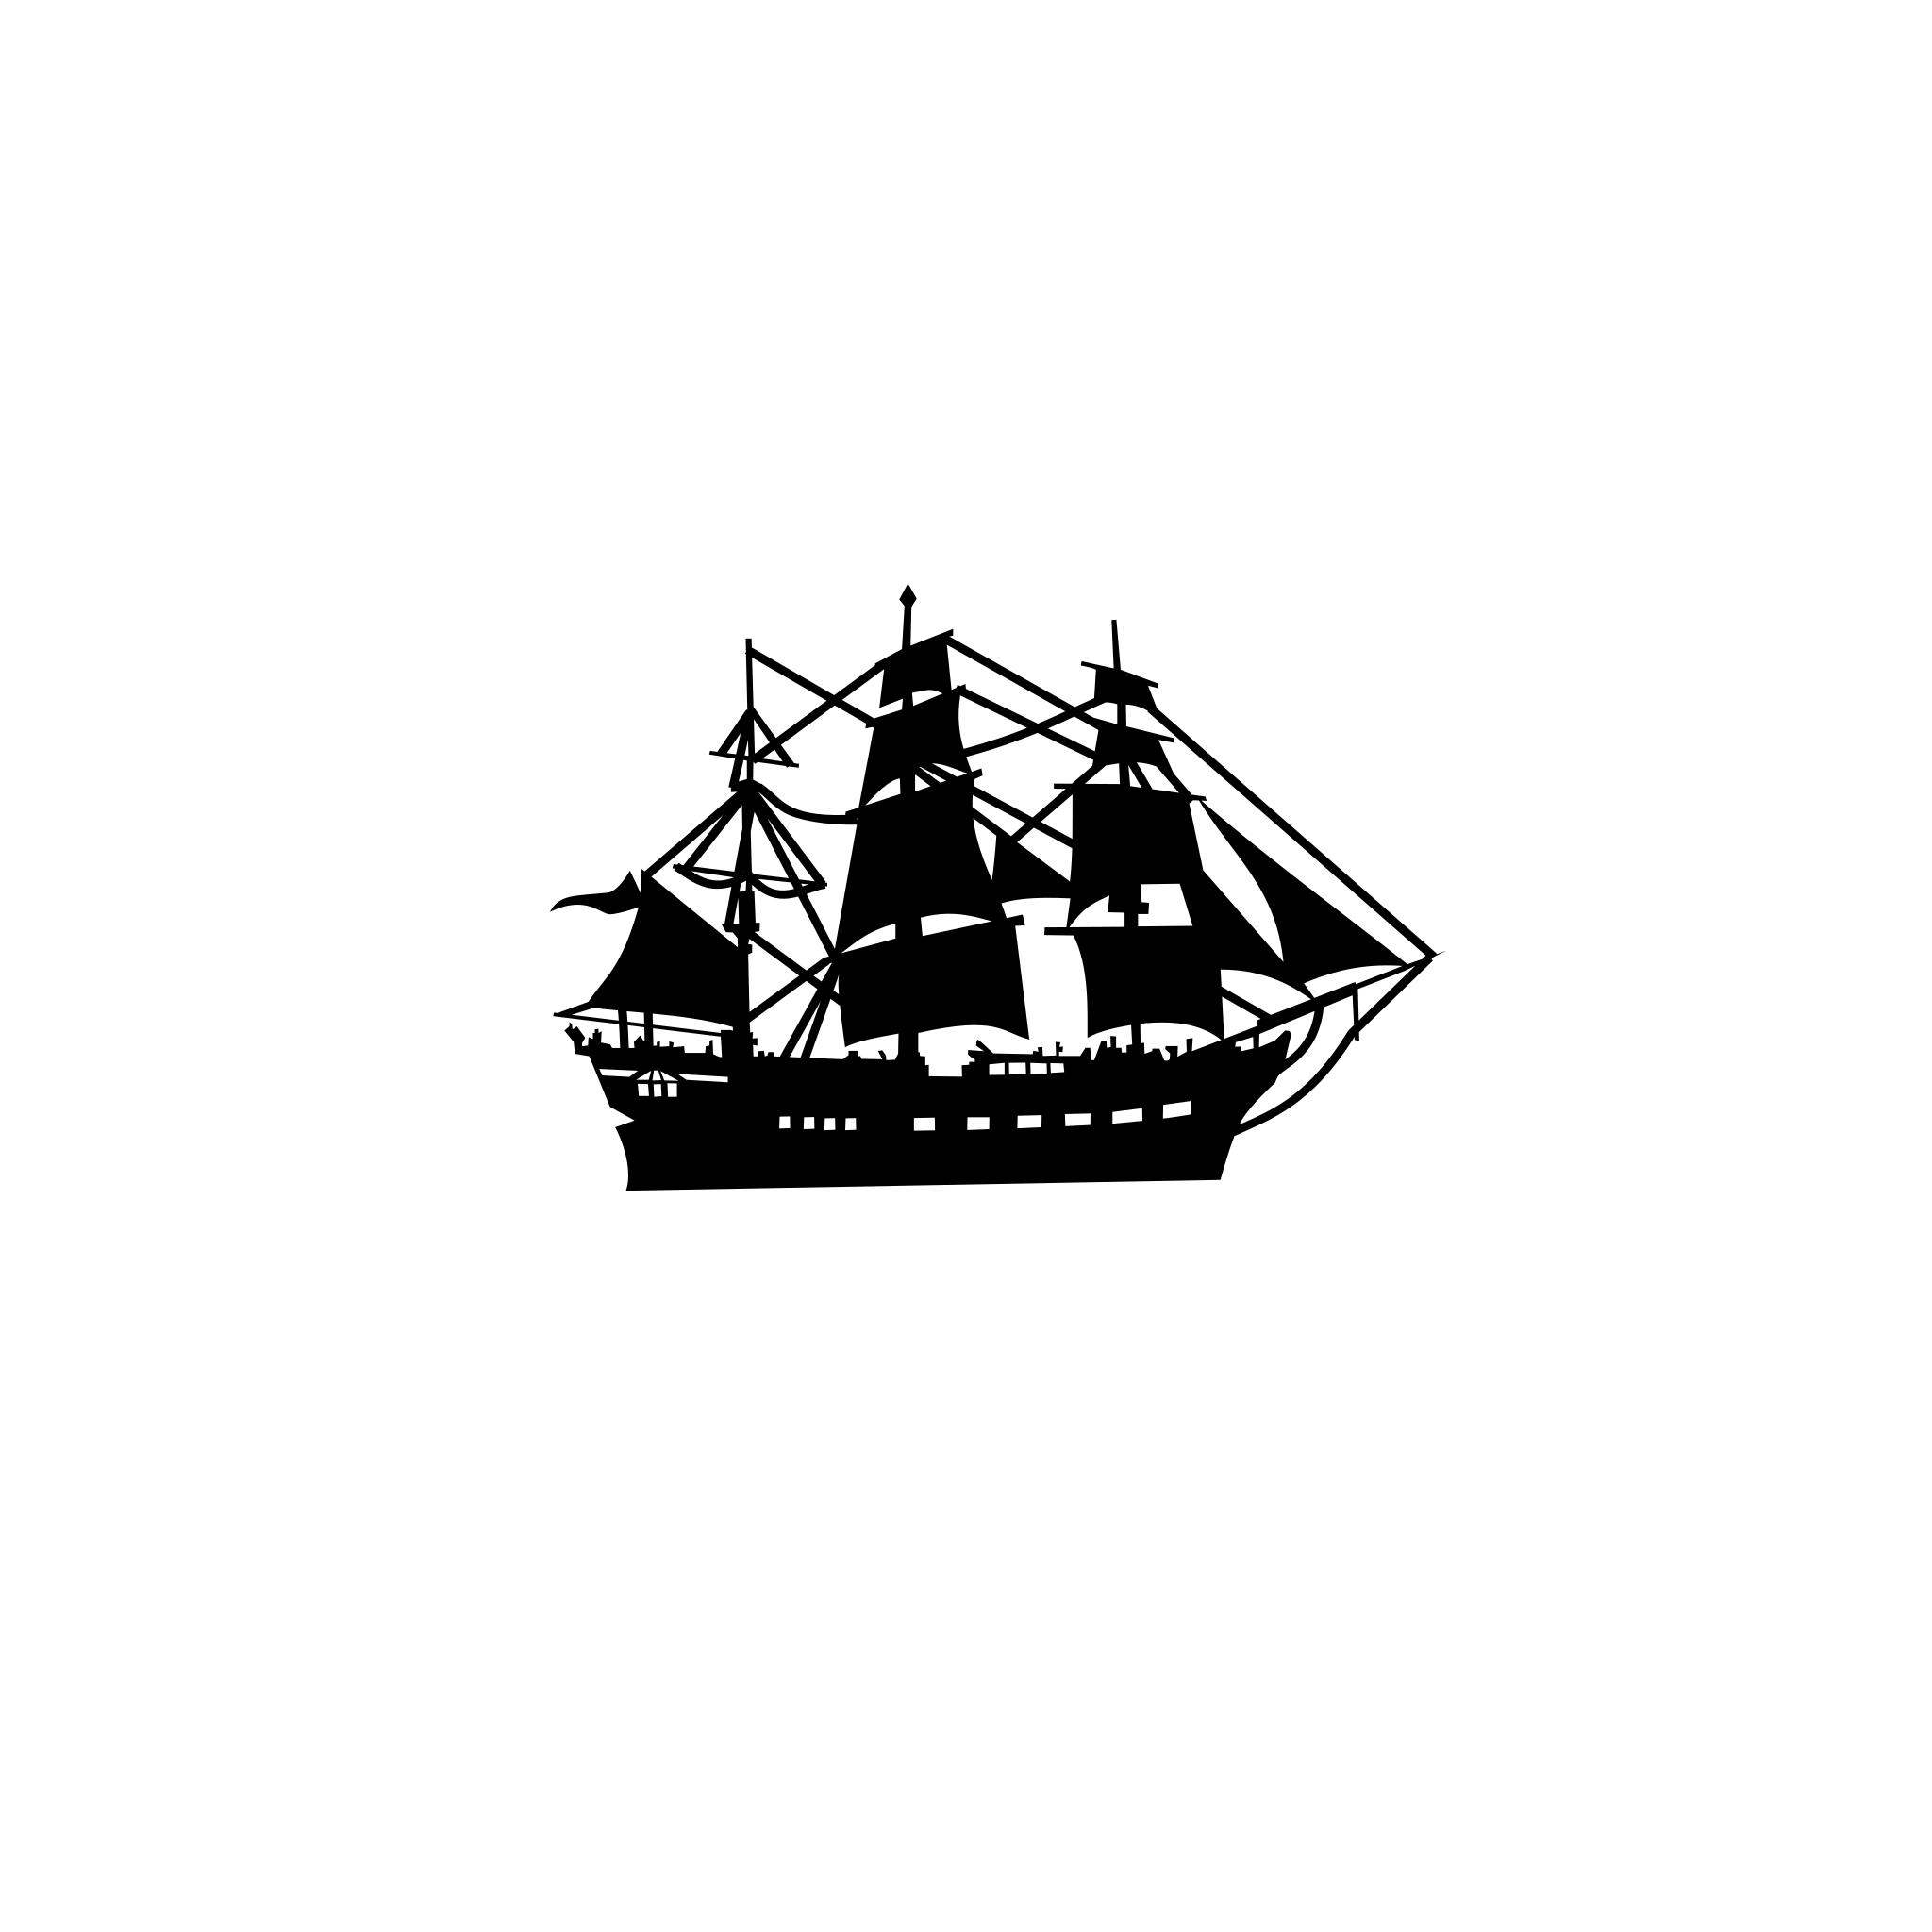 Кораблик на черном фоне